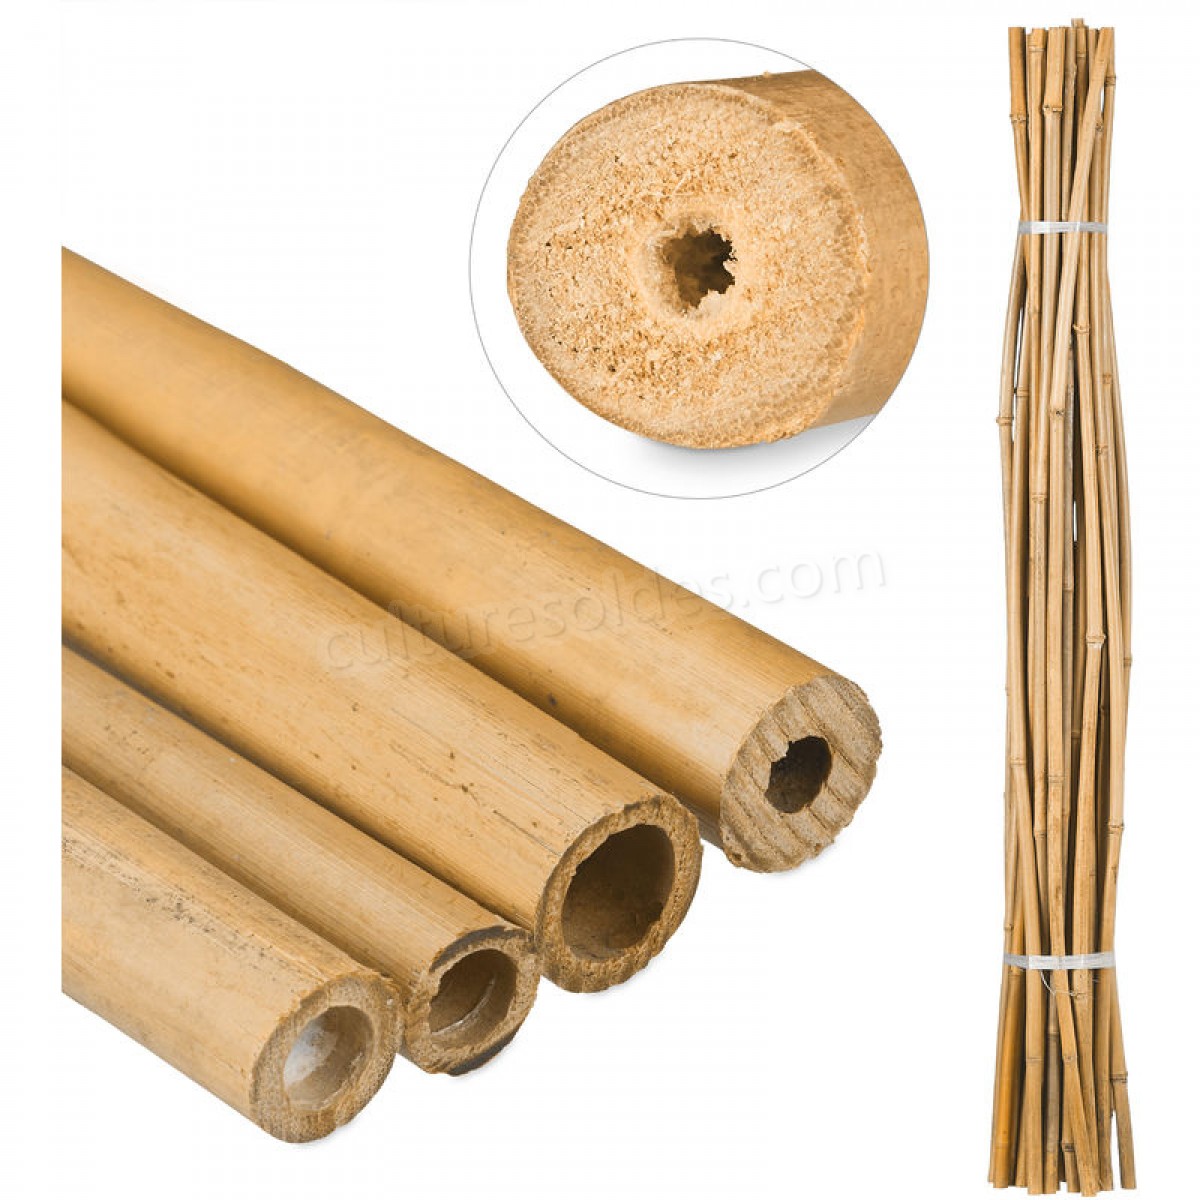  Tiges en bambou 150 cm, en bambou naturel, bâtons en bambou comme tuteur ou décoration, pour bricoler, couleur soldes en ligne -  Tiges en bambou 150 cm, en bambou naturel, bâtons en bambou comme tuteur ou décoration, pour bricoler, couleur soldes en ligne